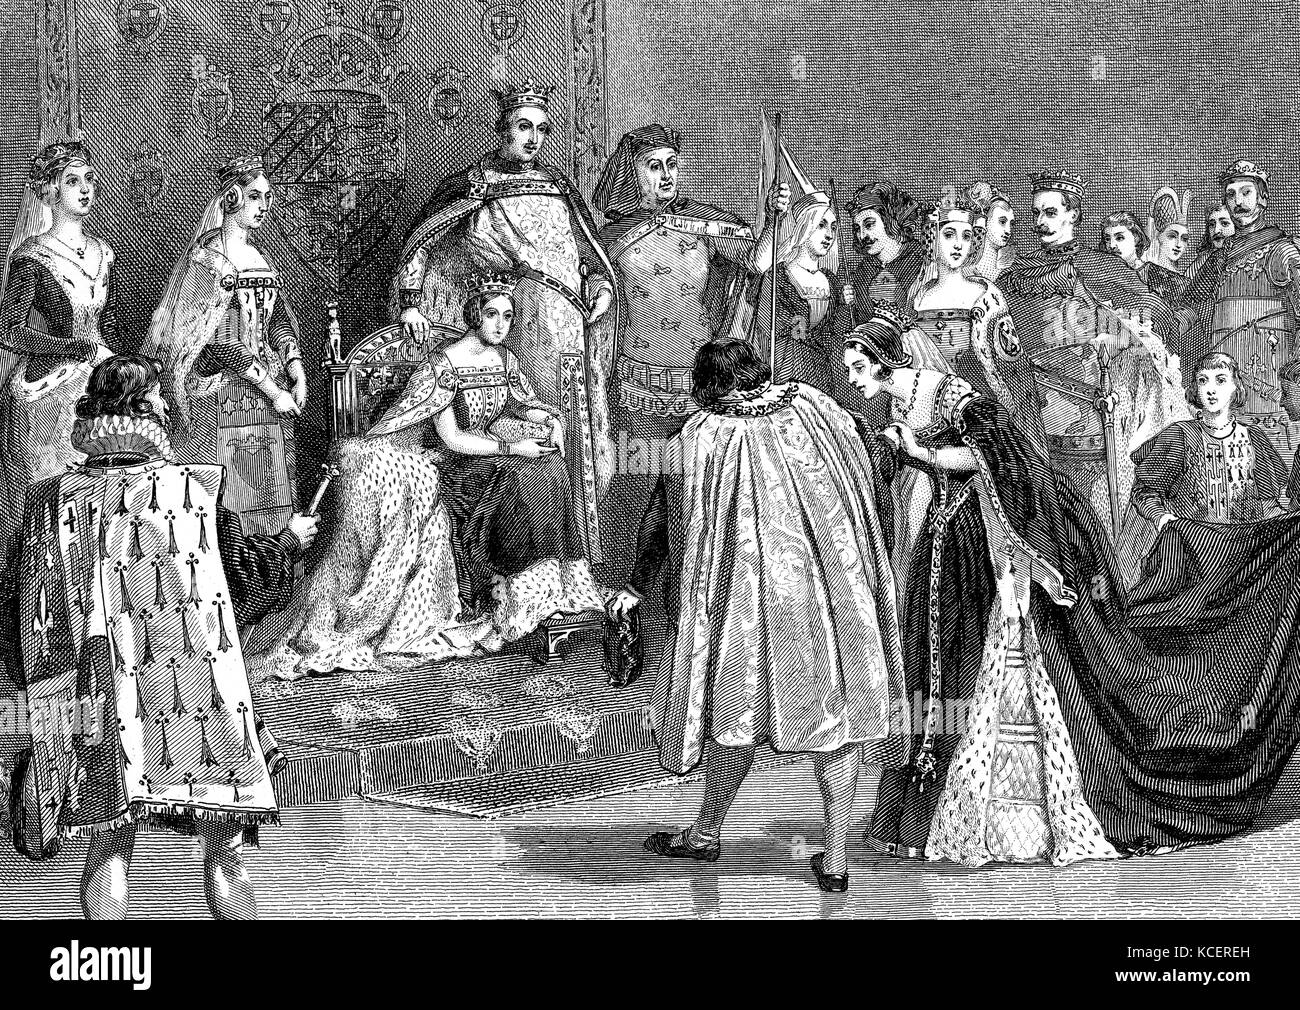 Kupferstich mit der Darstellung der plantagenet Ball der Königin Victoria (1819-1901) Königin von Großbritannien, Kaiserin von Indien. Vom 19. Jahrhundert Stockfoto